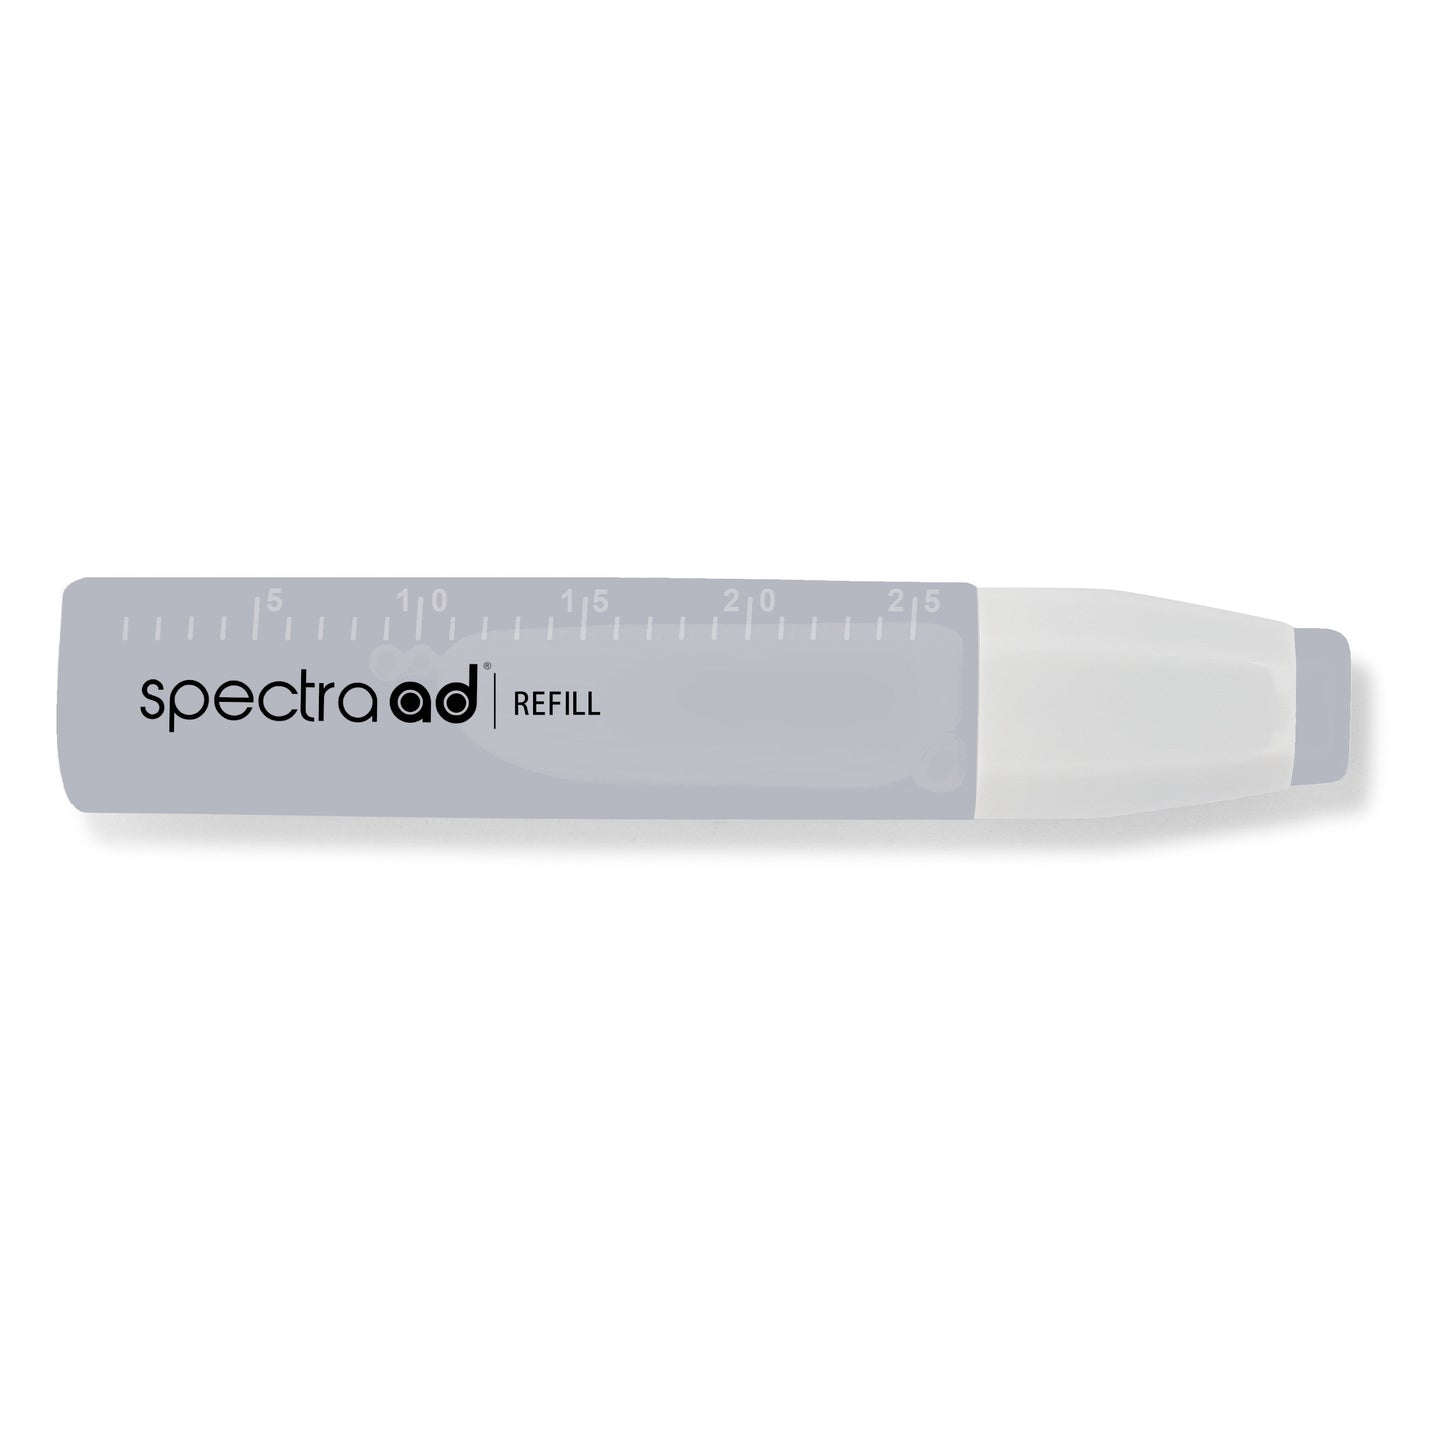 021 - Basic Gray 3 - Spectra AD Refill Bottle